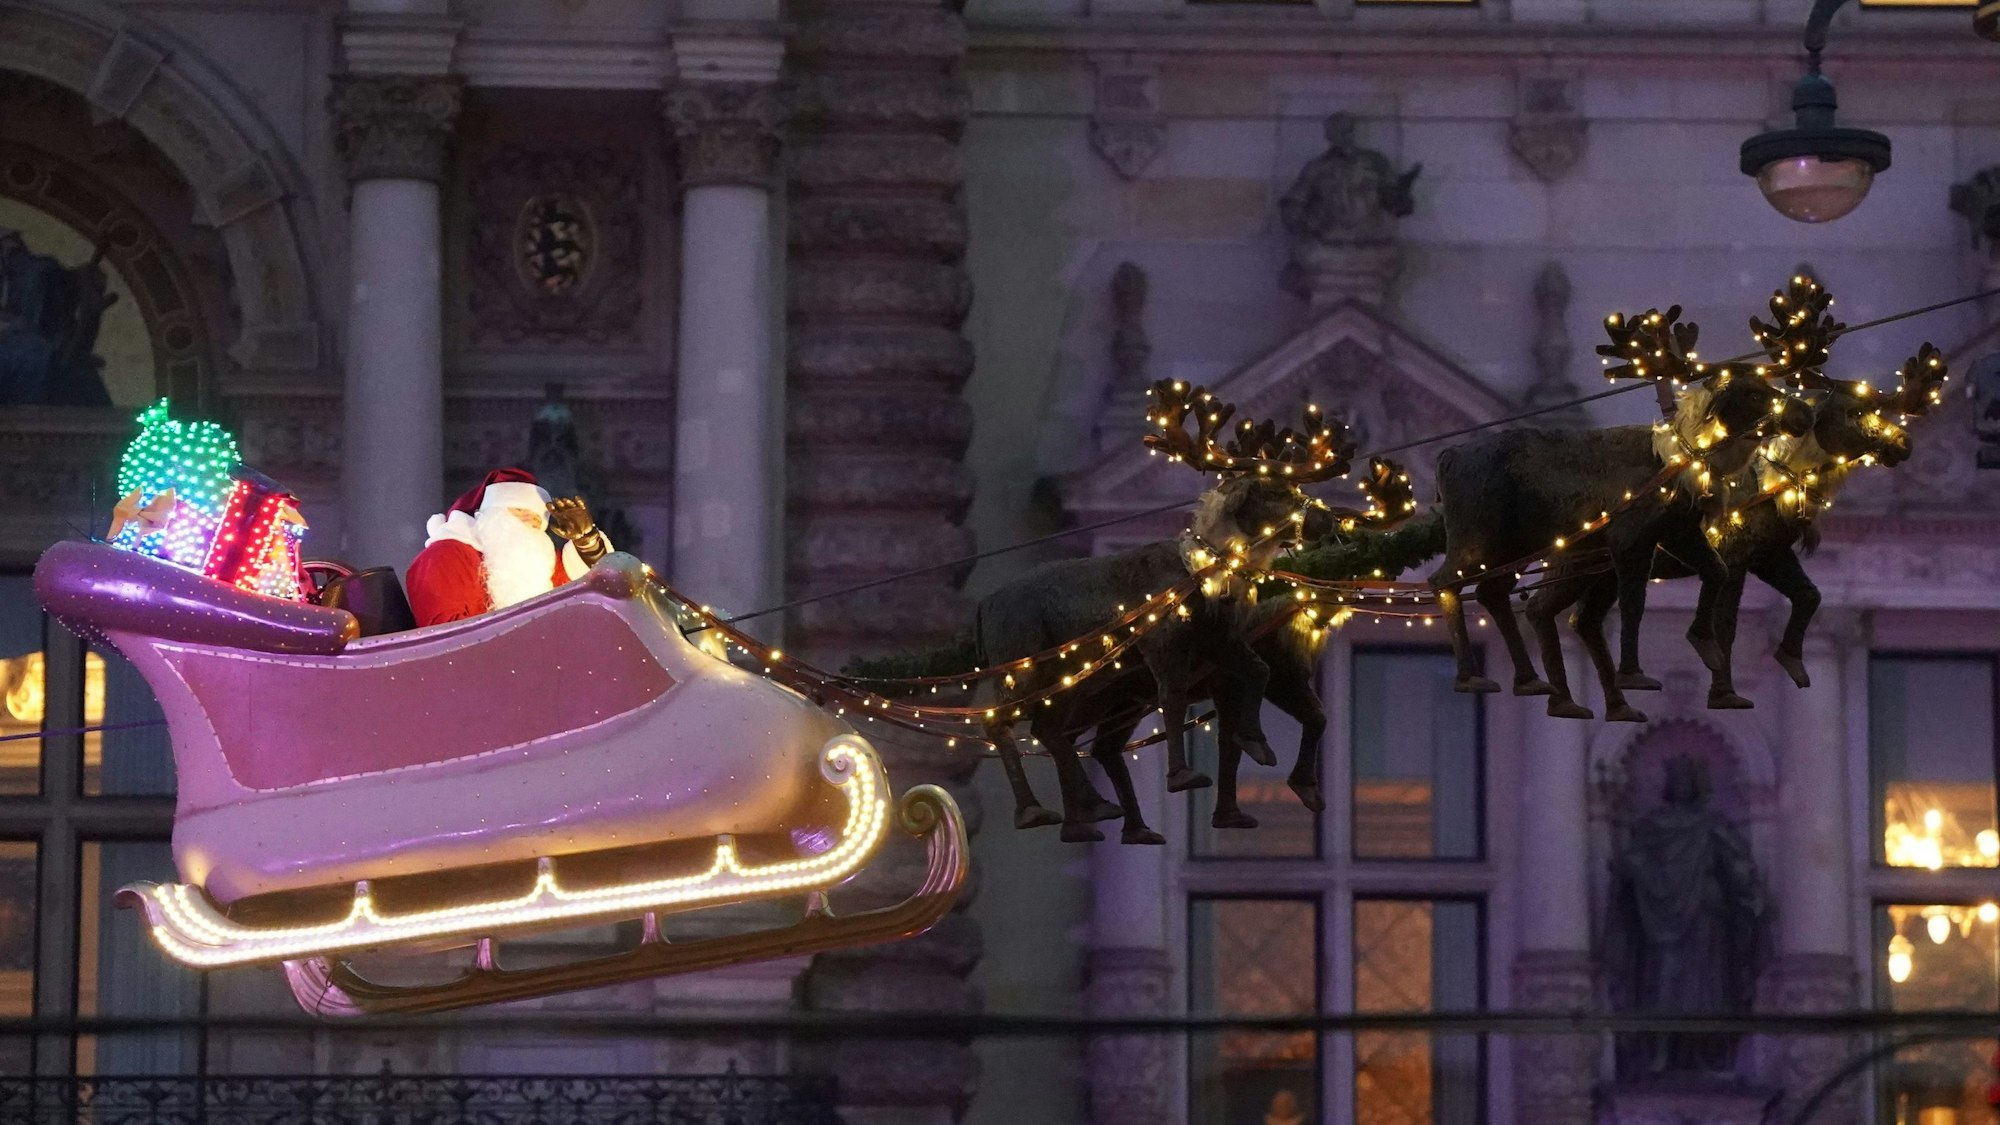 Der Weihnachtsmann schwebt im Schlitten mit seinen Rentieren über den Roncalli Weihnachtsmarkt auf dem Rathausmarkt in der Hamburger Innenstadt.